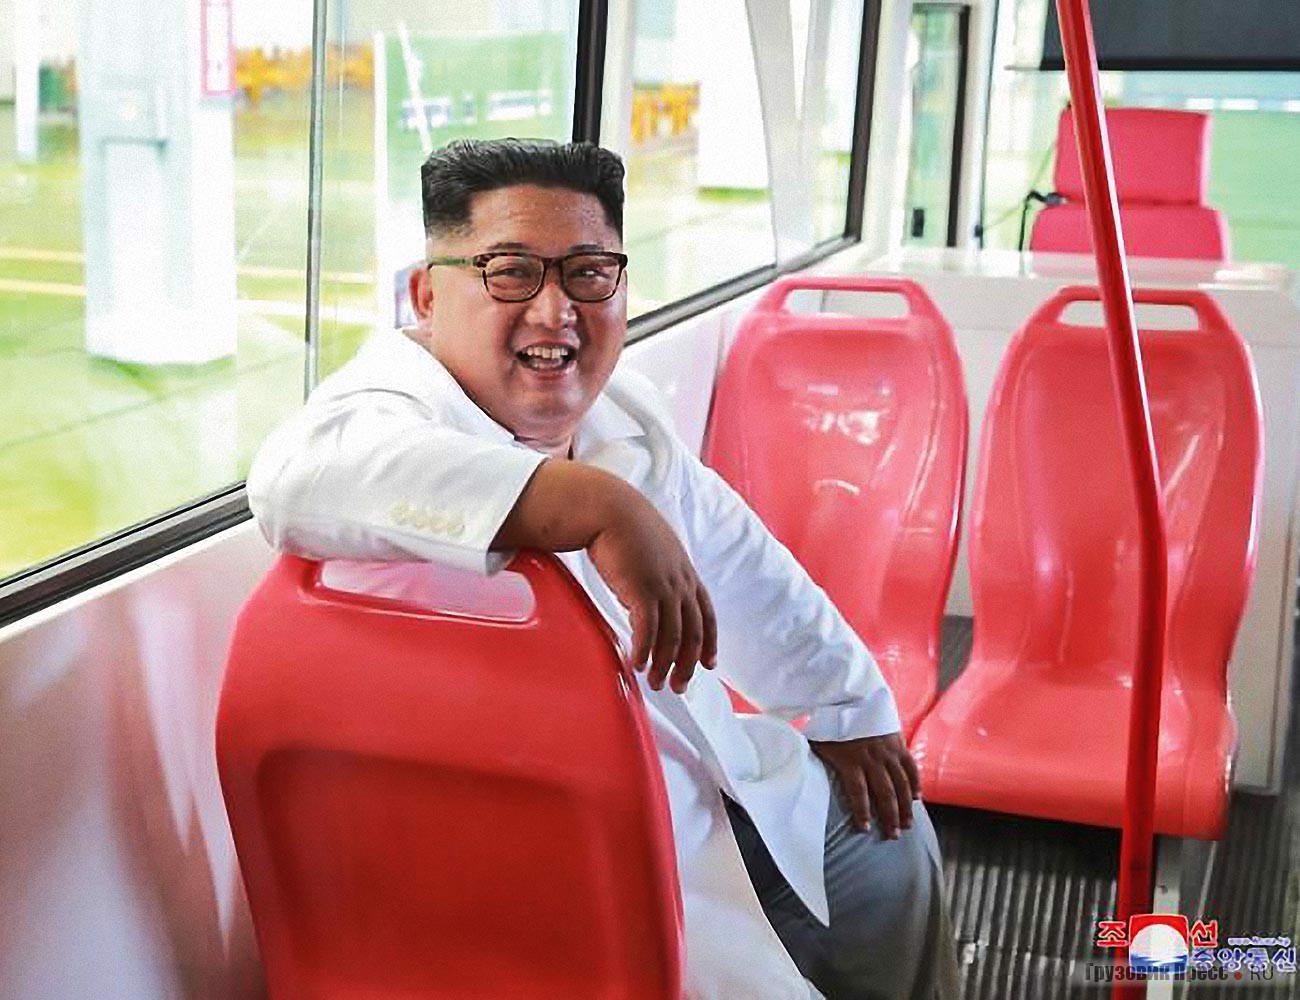 Руководитель страны остался доволен новыми пластиковыми сиденьями в троллейбусе